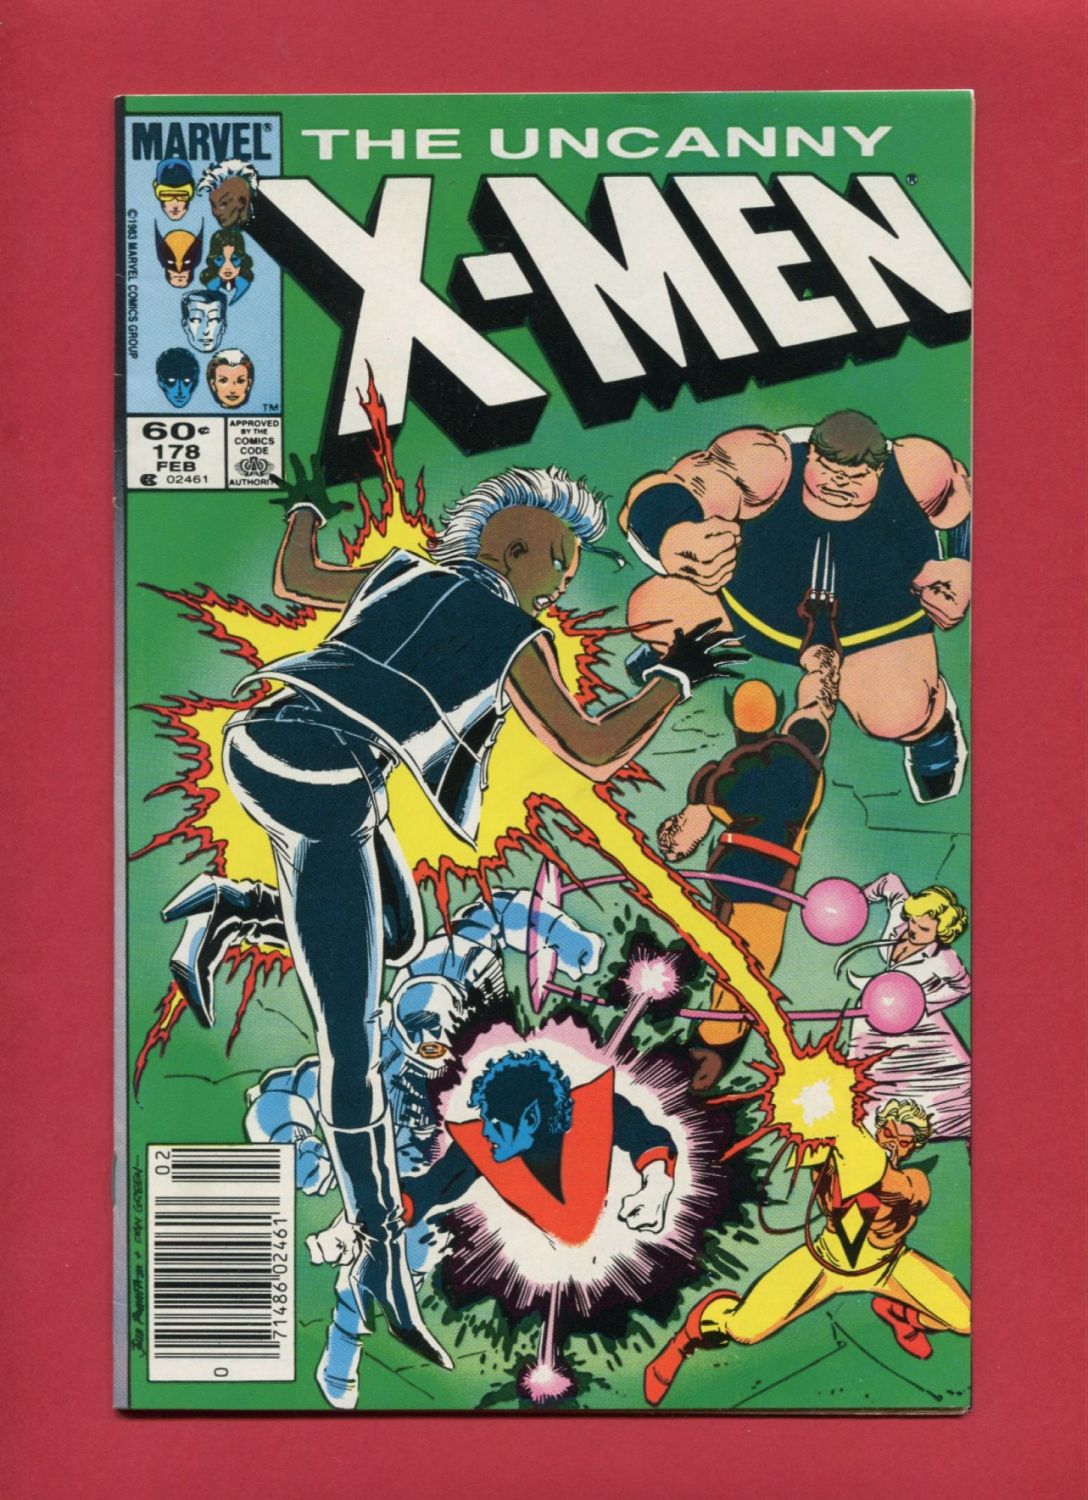 Uncanny X-Men (Volume 1 1963) #178, Feb 1984, Marvel :: Iconic Comics ...